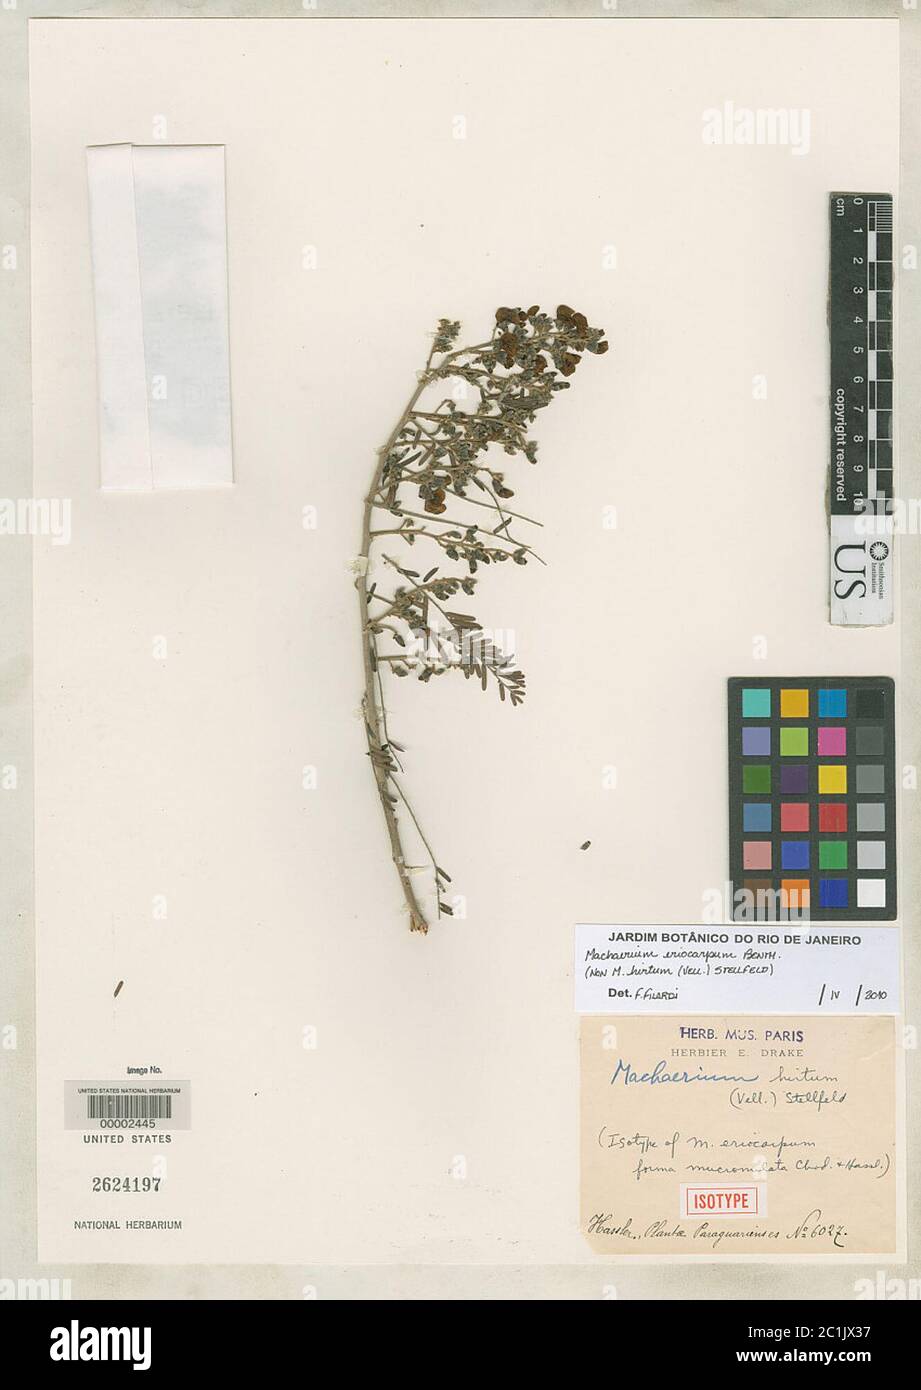 Machaerium eriocarpum f mucronulata Chodat Hassl Machaerium eriocarpum f mucronulata Chodat Hassl. Stock Photo